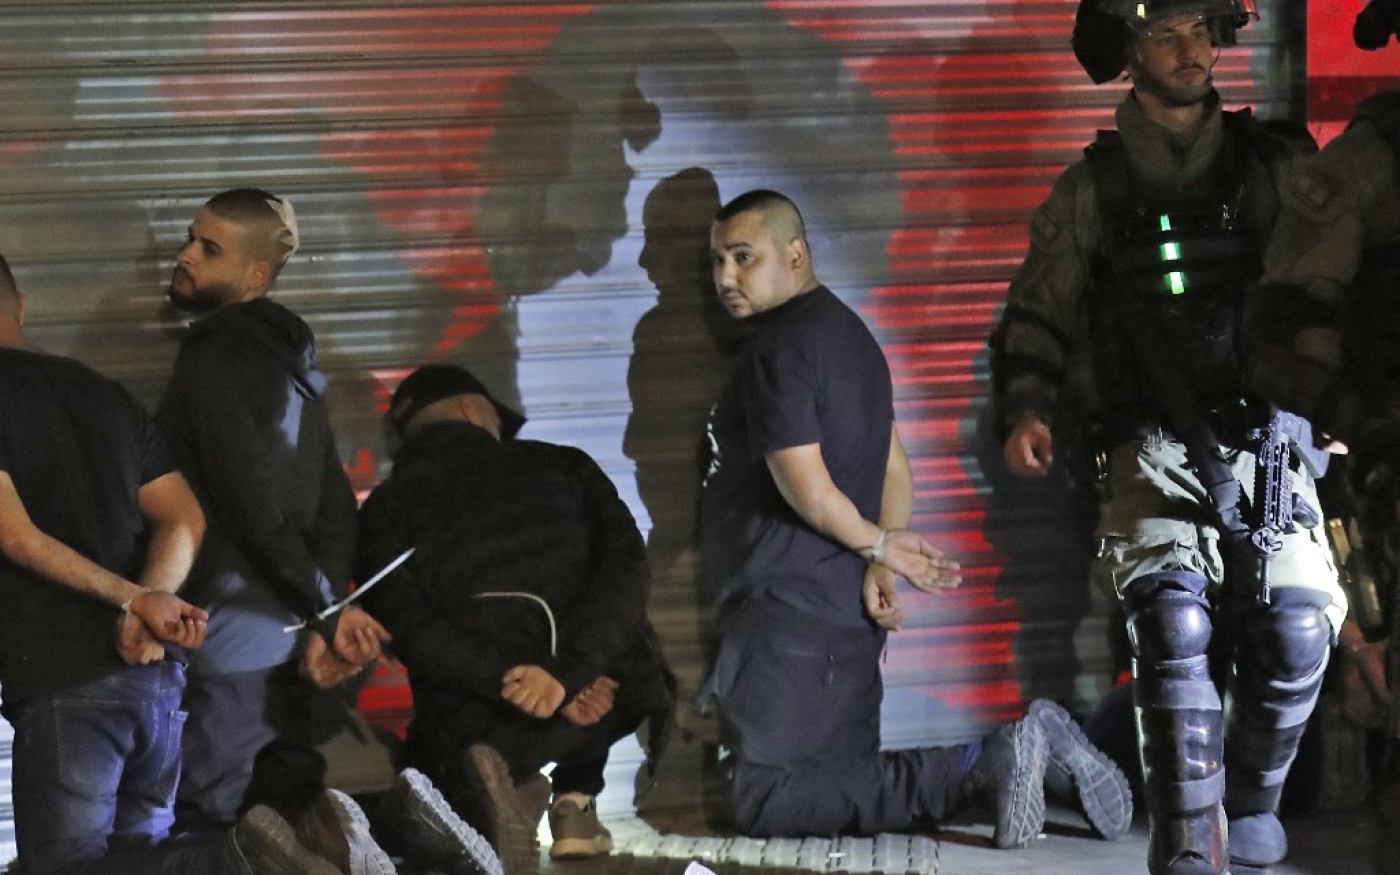 Les forces israéliennes arrêtent un groupe de citoyens palestiniens d’Israël à Lod, le 13 mai, lors d’un saccage par des extrémistes israéliens et des manifestations de Palestiniens (AFP)